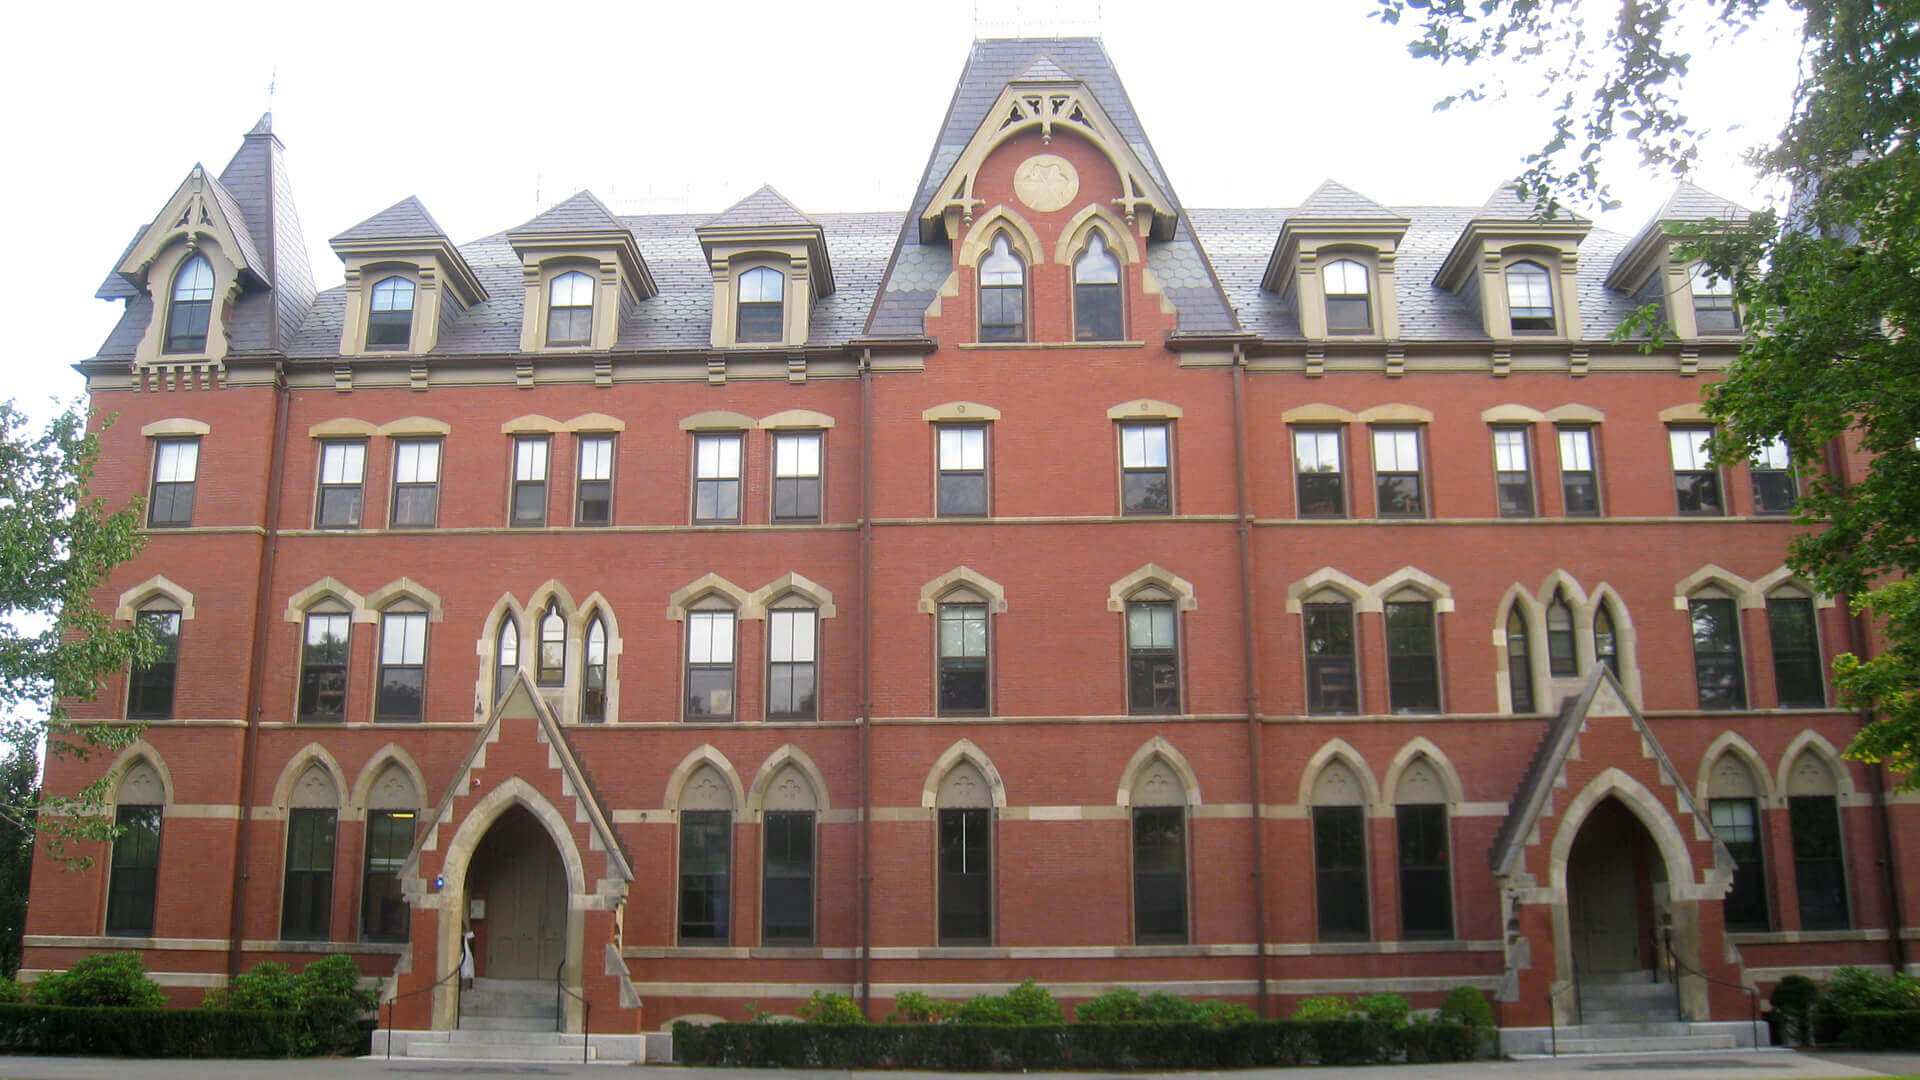 Tufts University campus